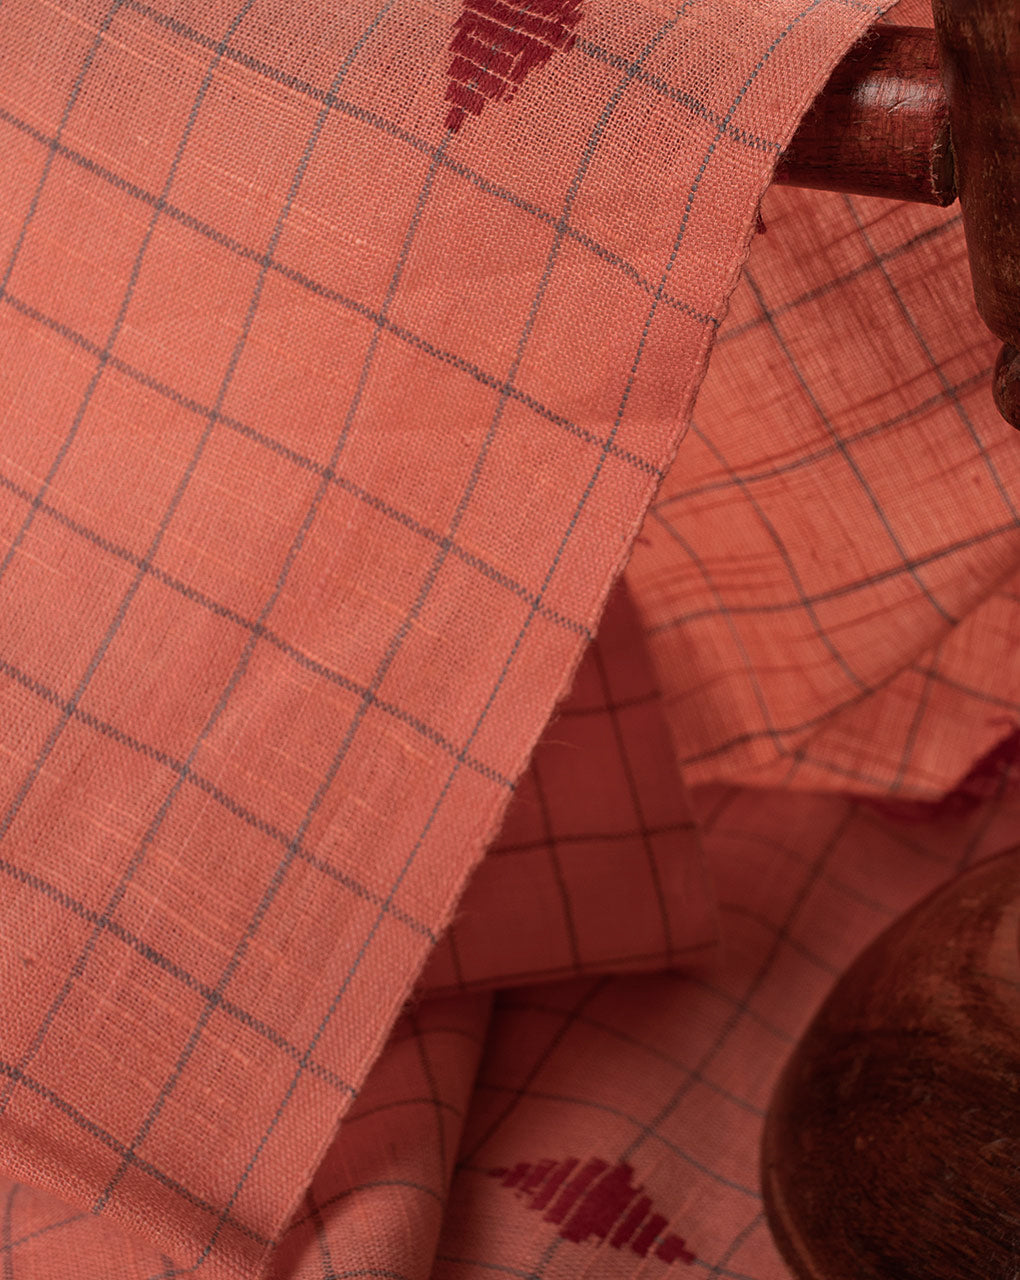 ( Pre Cut 1.5 MTR ) Checks Woven Jacquard Loom Textured Cotton Fabric